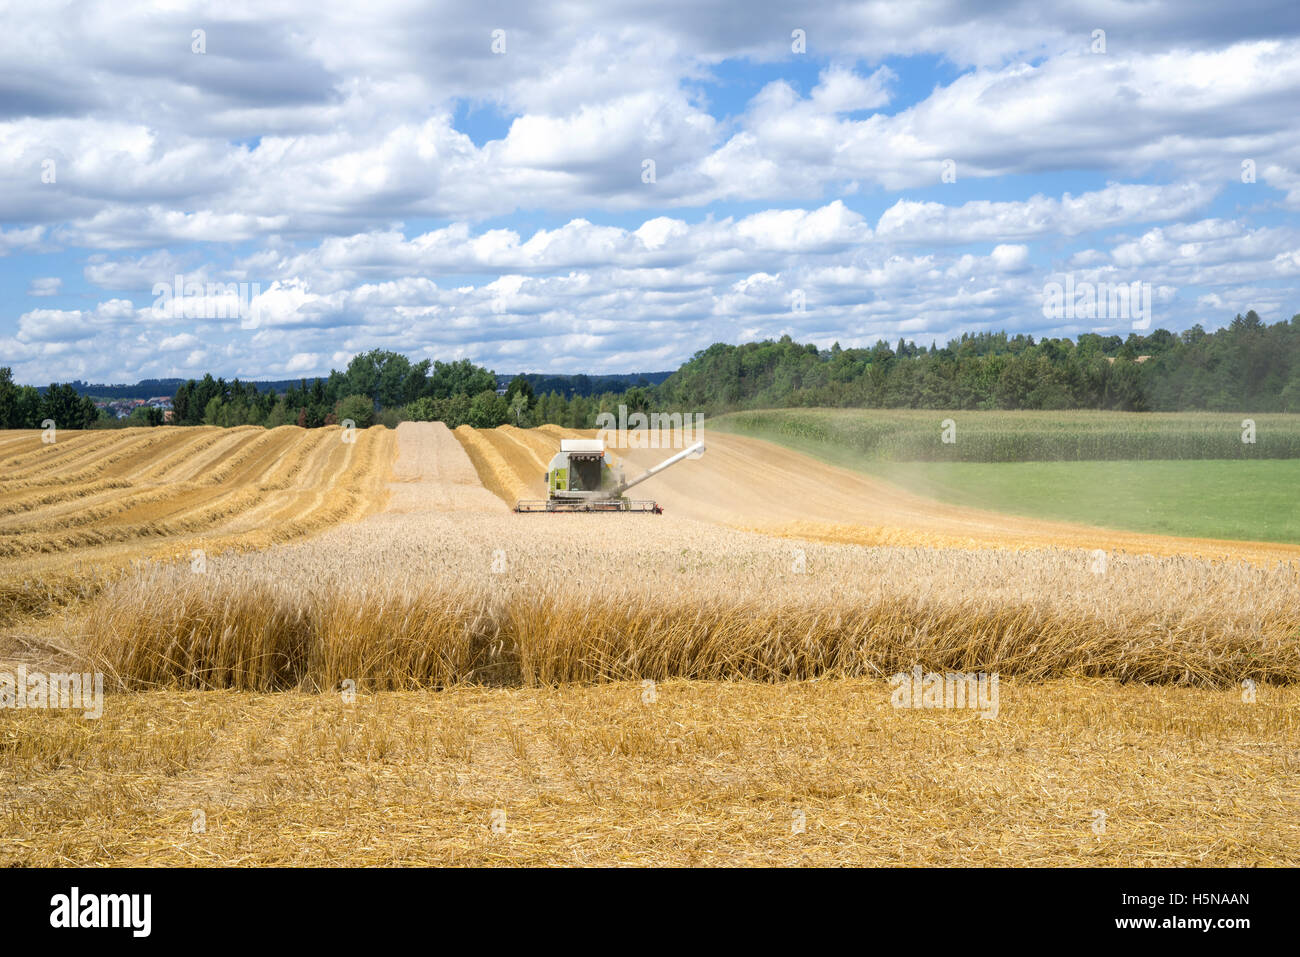 La récolte d'un champ de céréales Banque D'Images